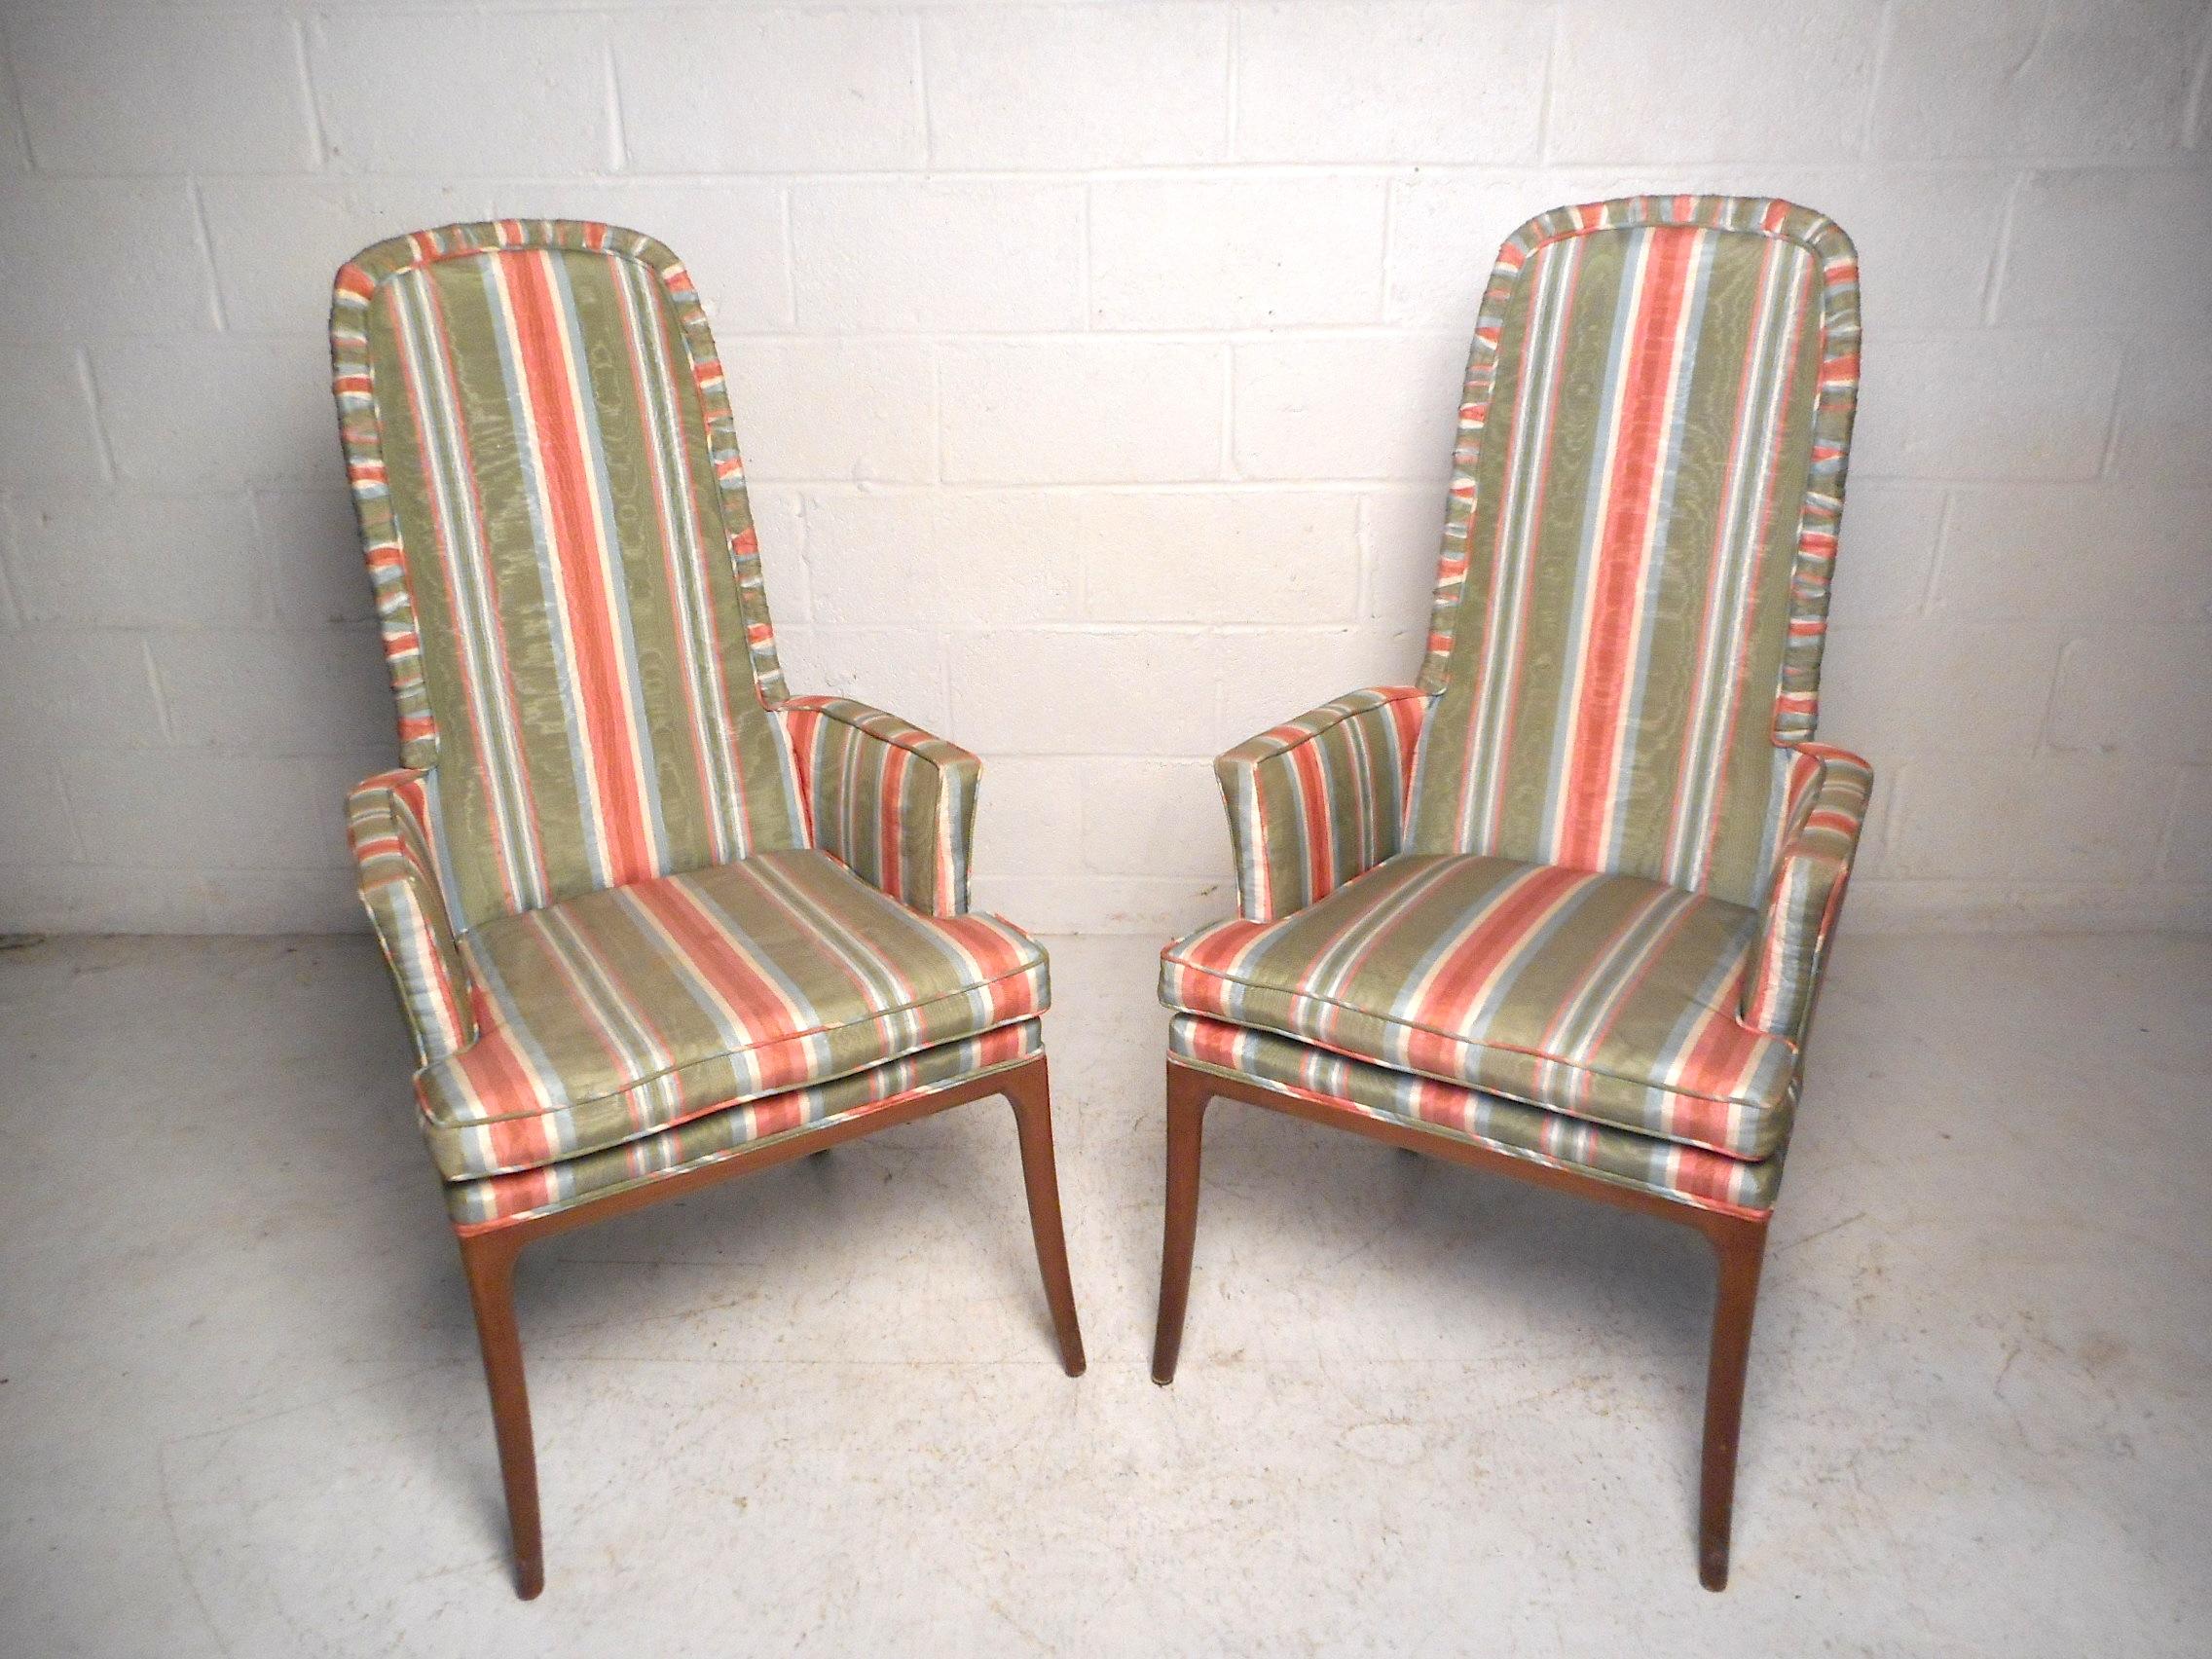 Cette paire impressionnante de chaises du milieu du siècle présente une tapisserie rayée vintage et des cadres en bois robustes avec des pieds élégamment évasés. Cette paire constitue un excellent complément à la disposition des sièges d'un